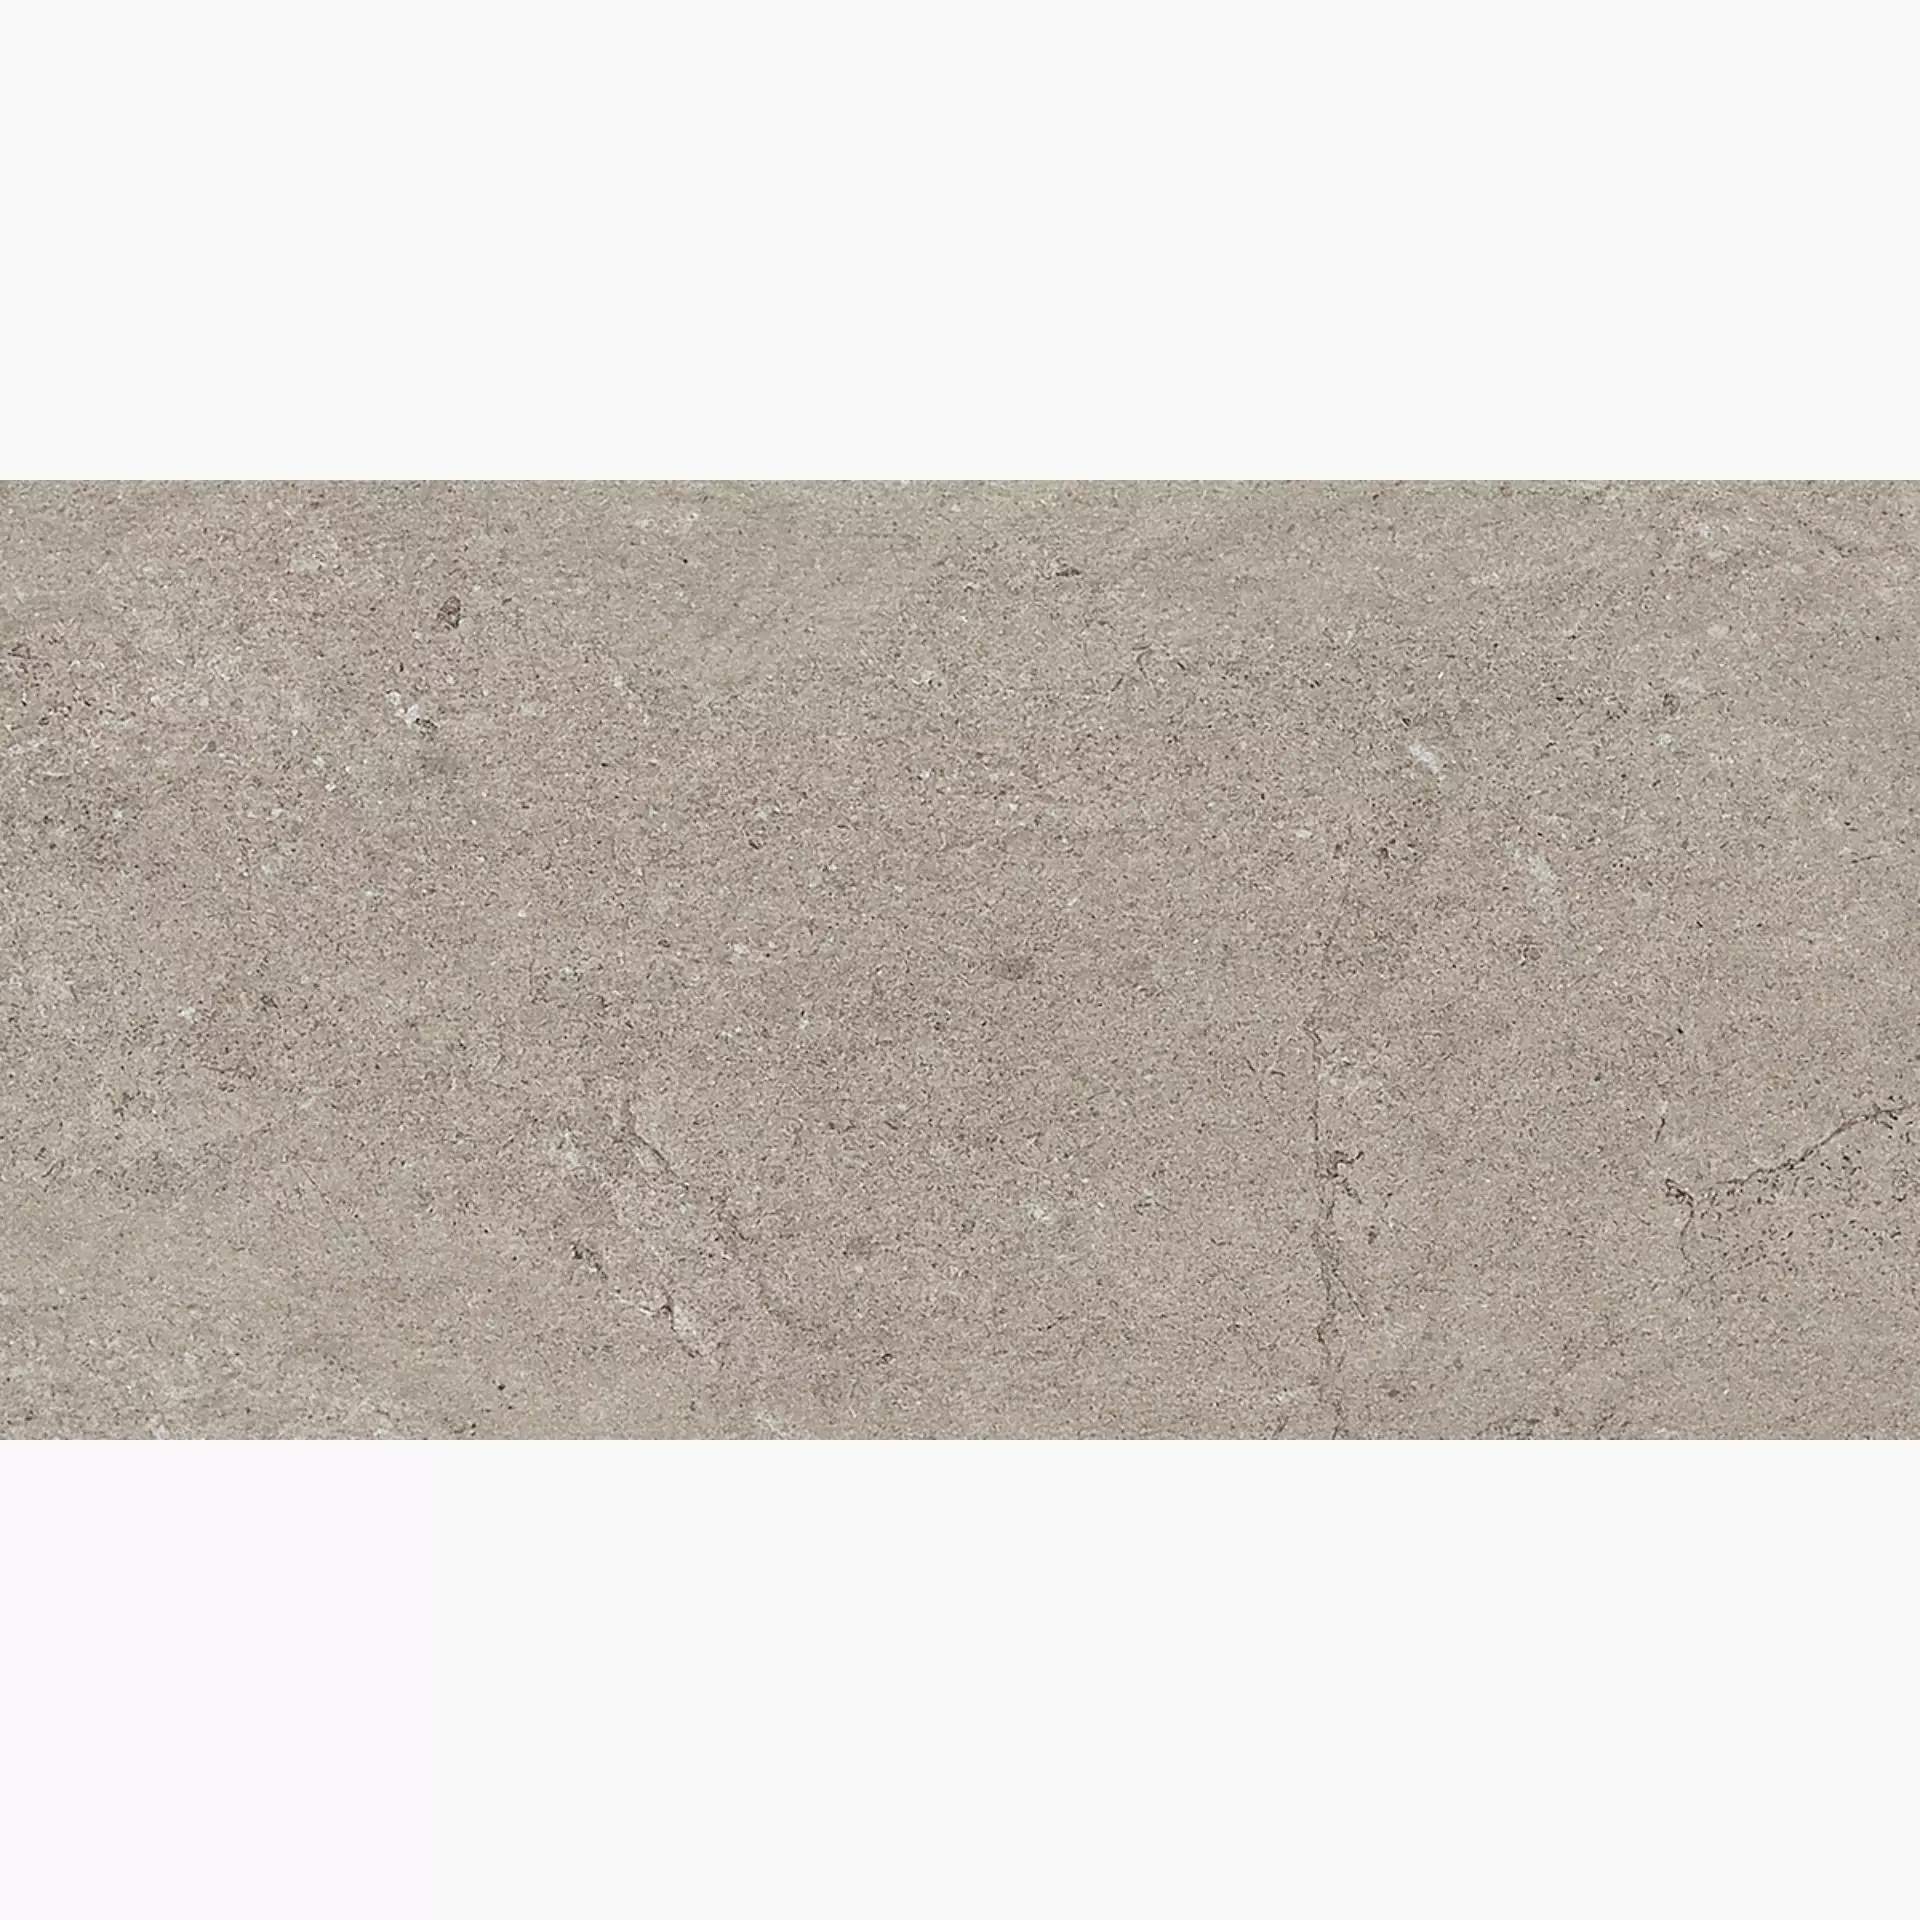 Gigacer Quarry Gravel Stone Matt 6QUAGRASTMAT3060 30x60cm 6mm